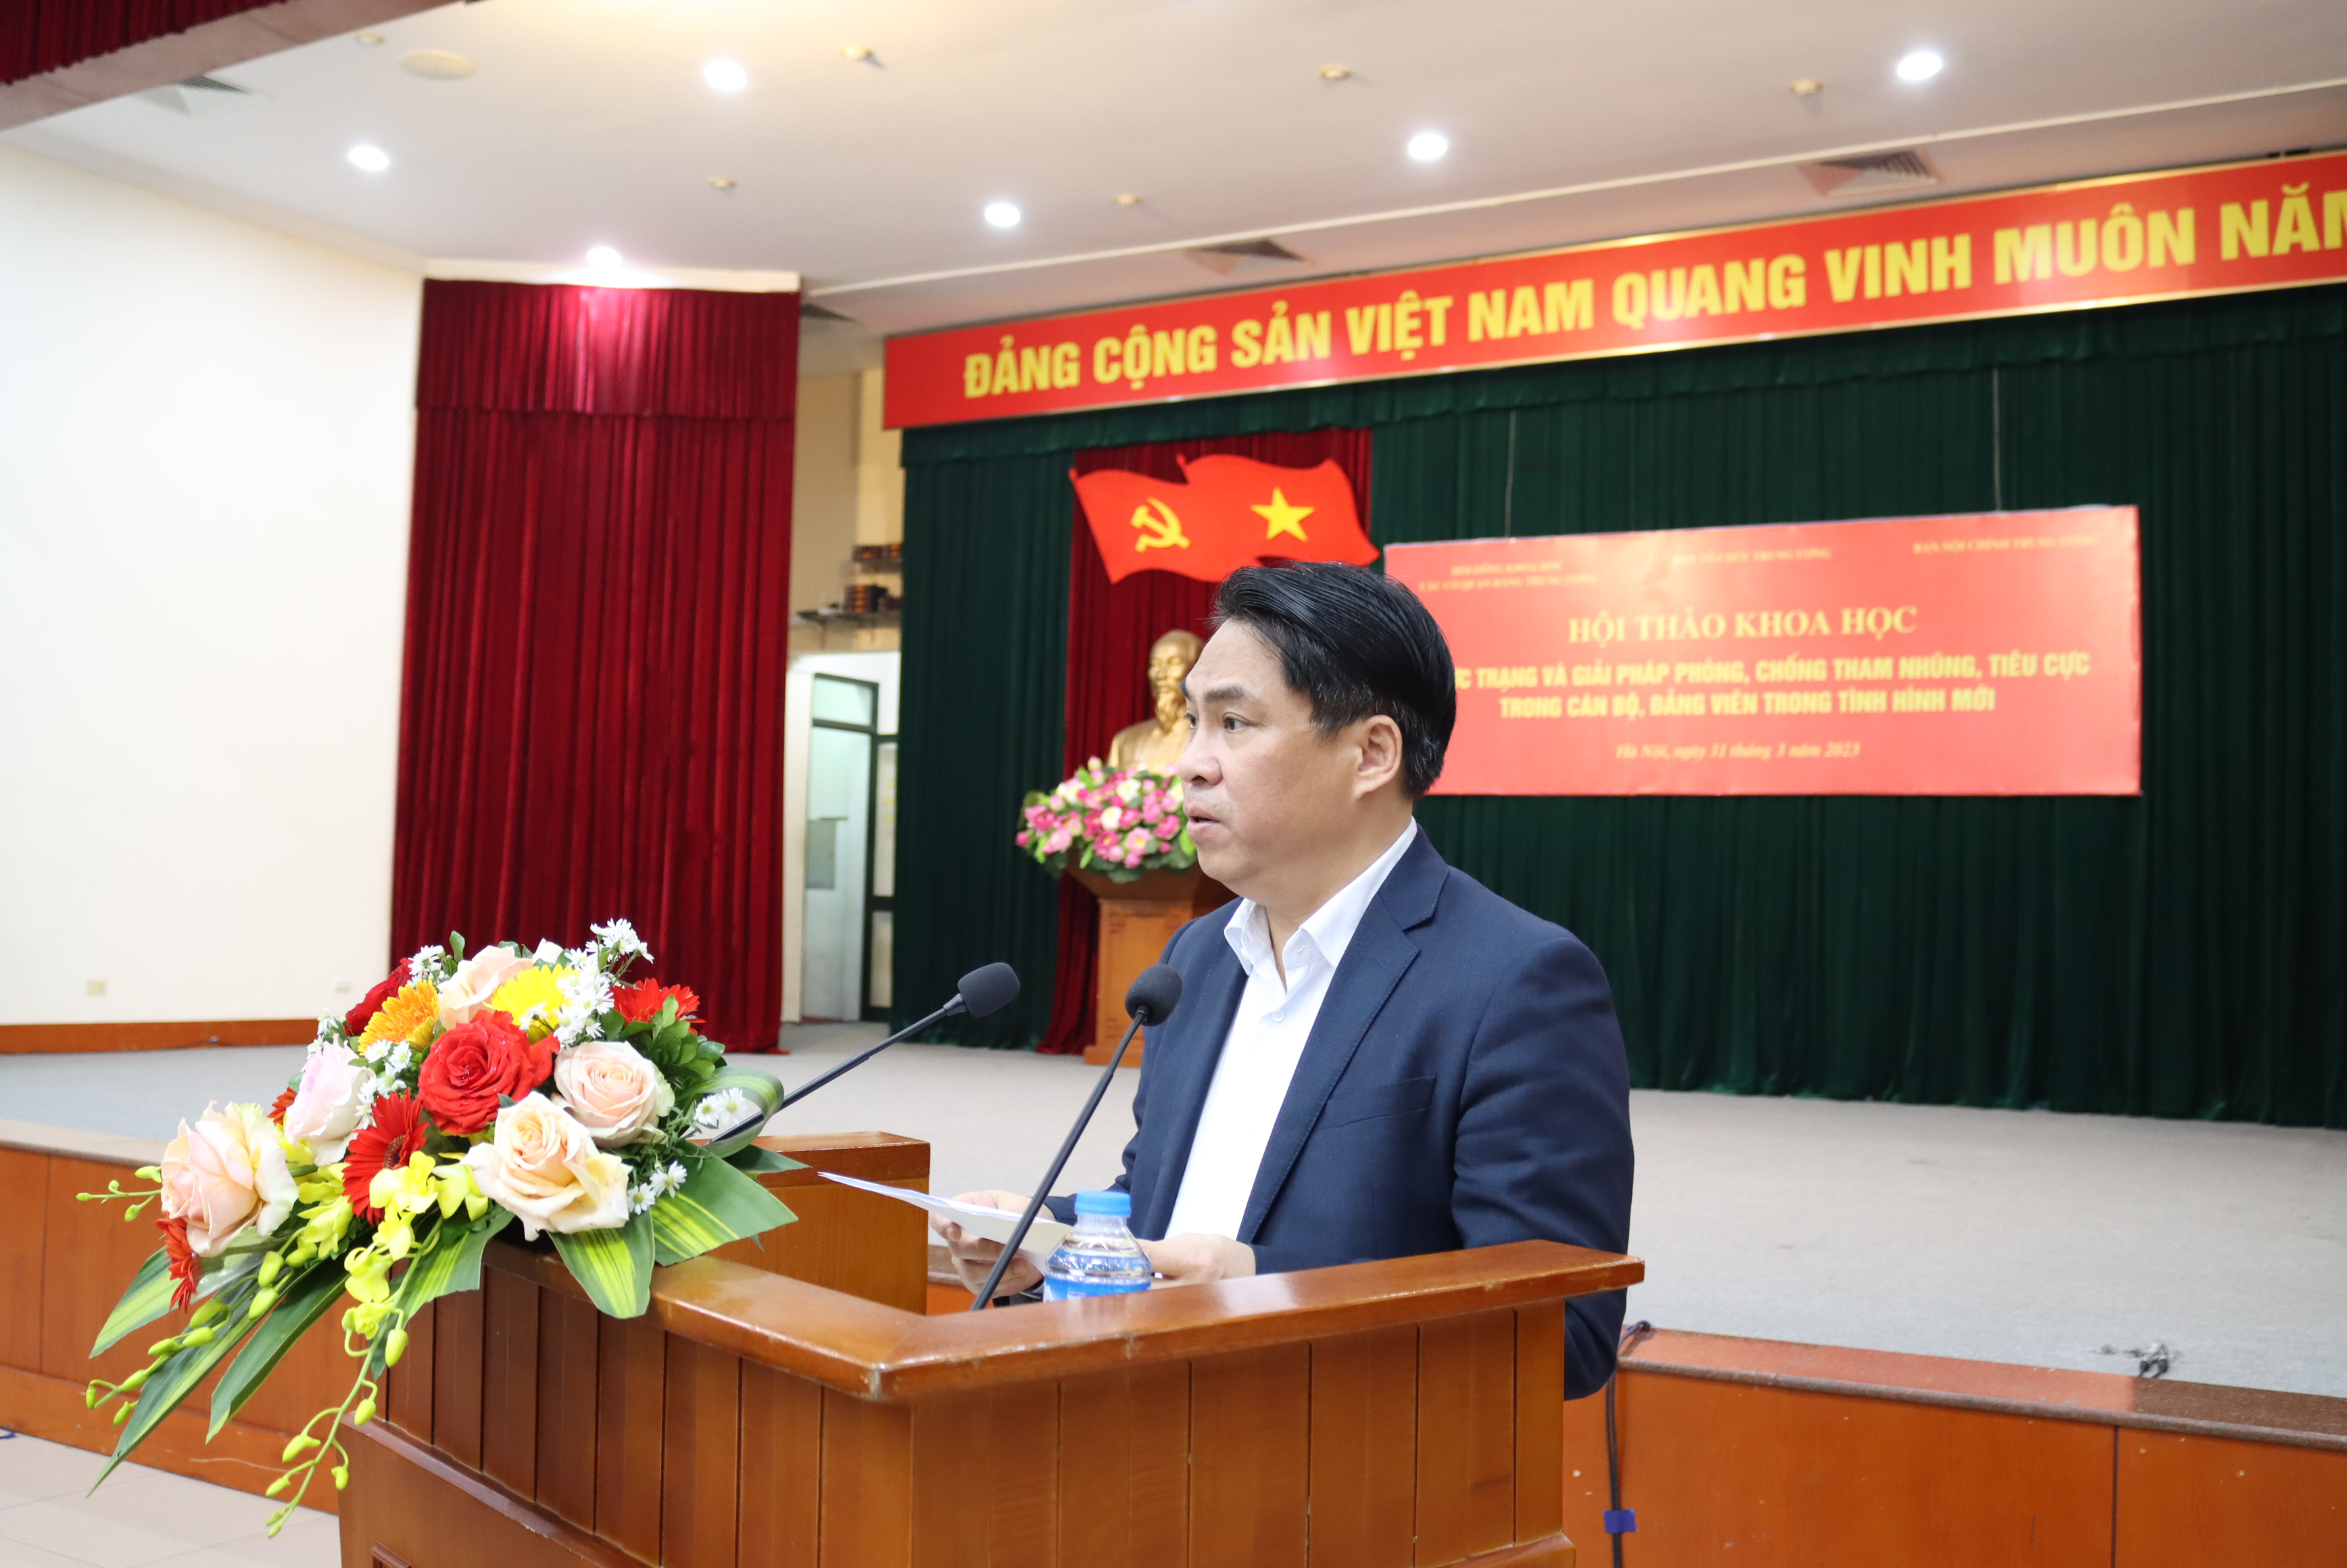 Phó Trưởng Ban Tổ chức Trung ương Phan Thăng An nhấn mạnh